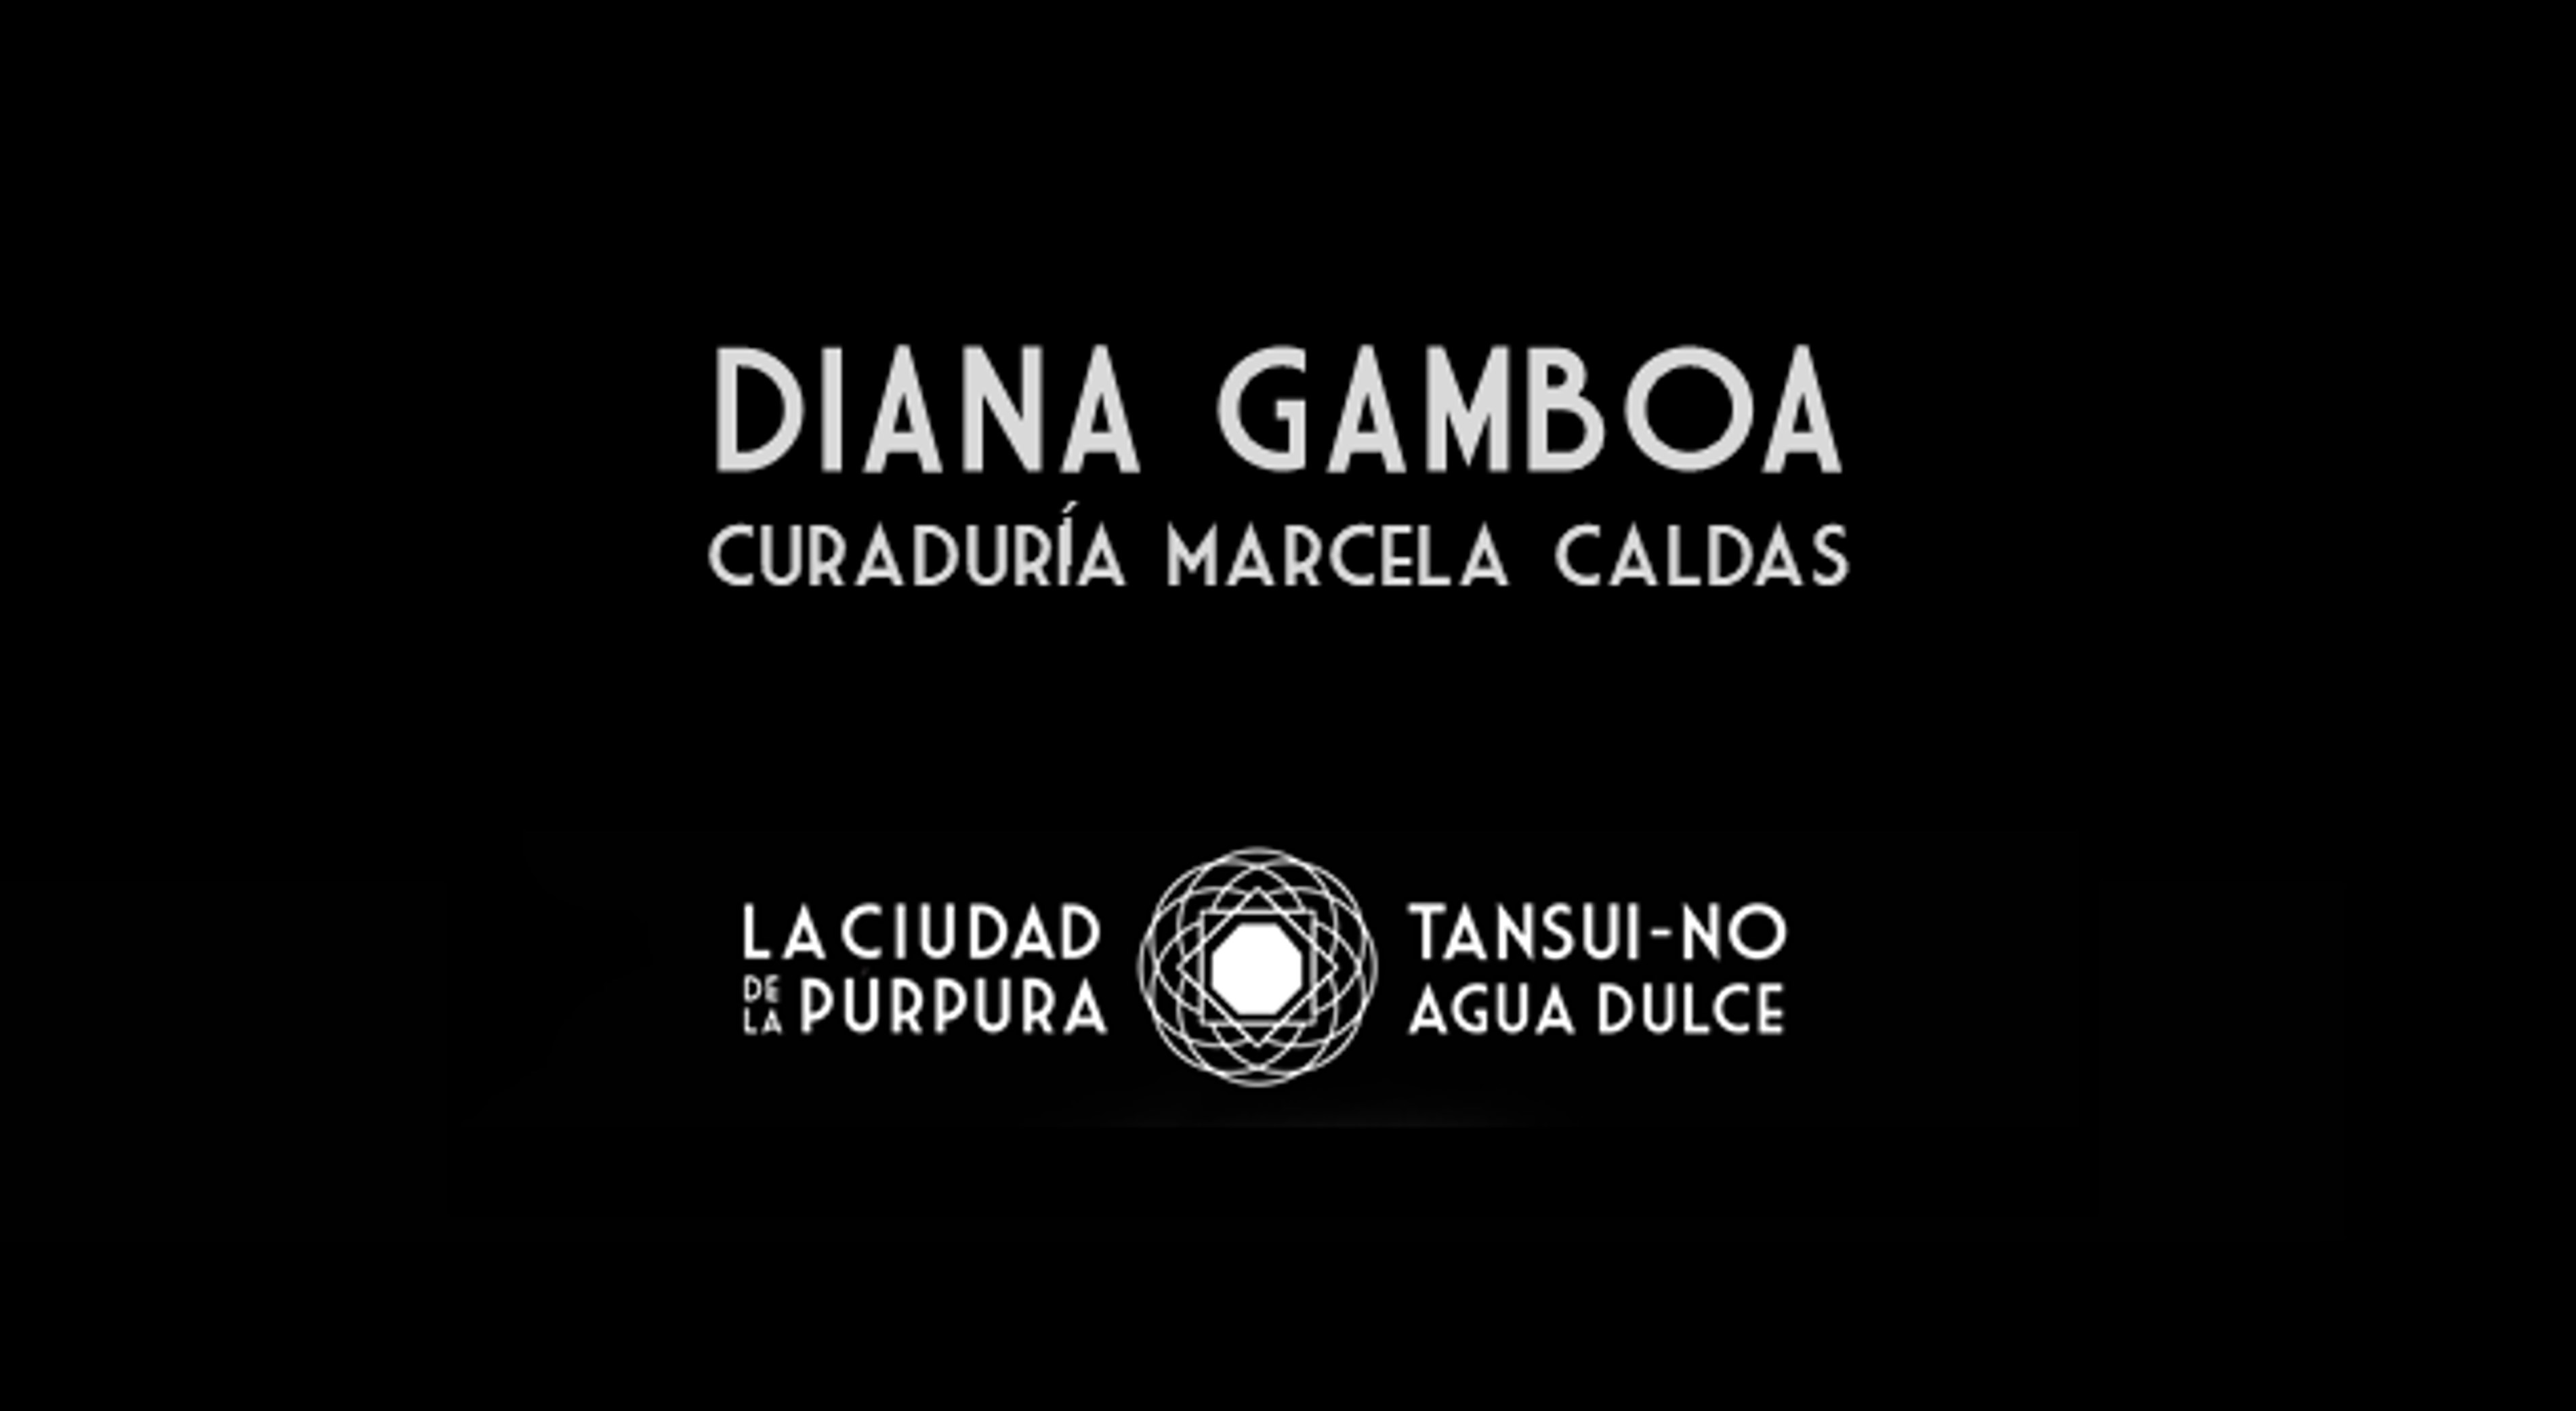 Inauguración de la exposición temporal “Ciudad de la púrpura, Tansui no, ‘agua dulce”, de la artista Diana Gamboa